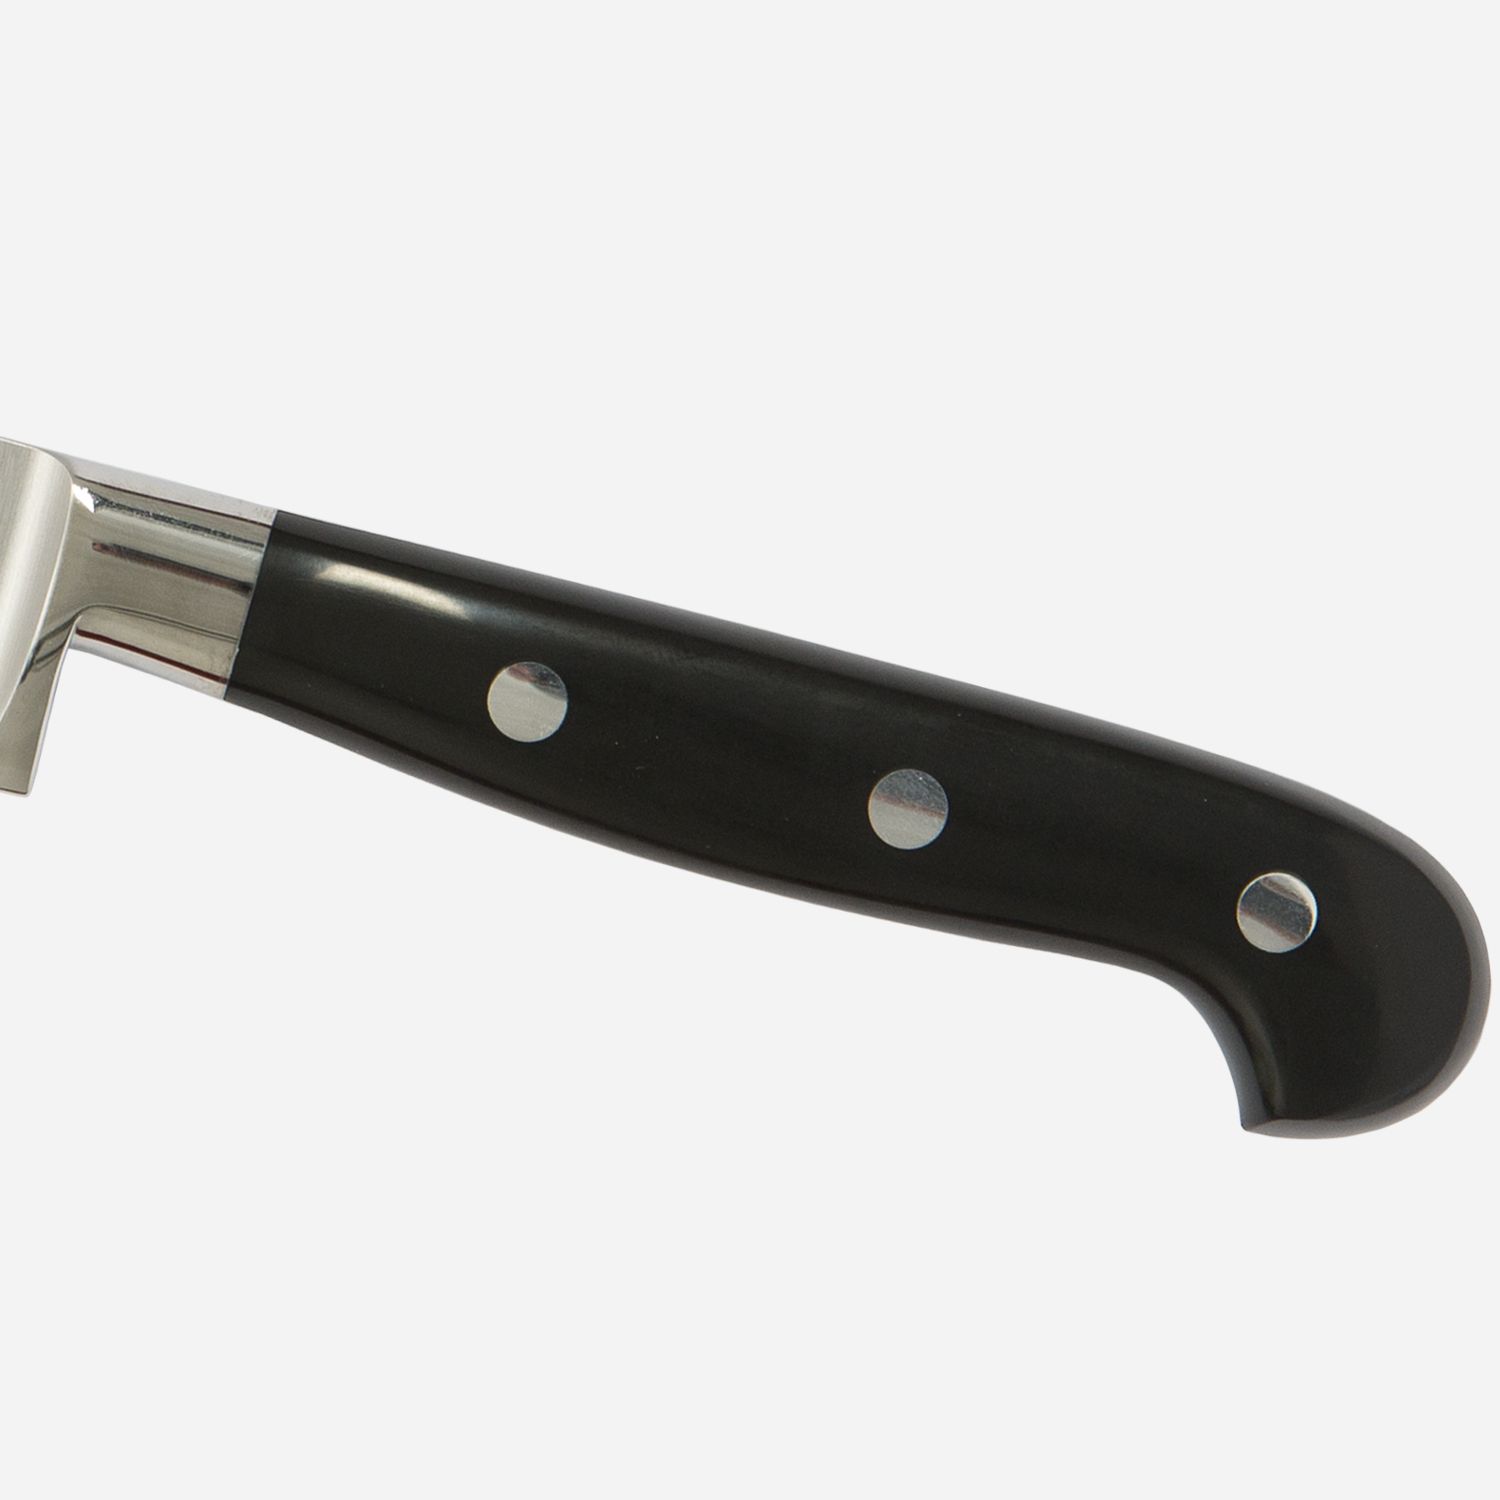 Cook's knife cm.16  Stainless Steel Berkel Adhoc Handle Glossy Black Resin